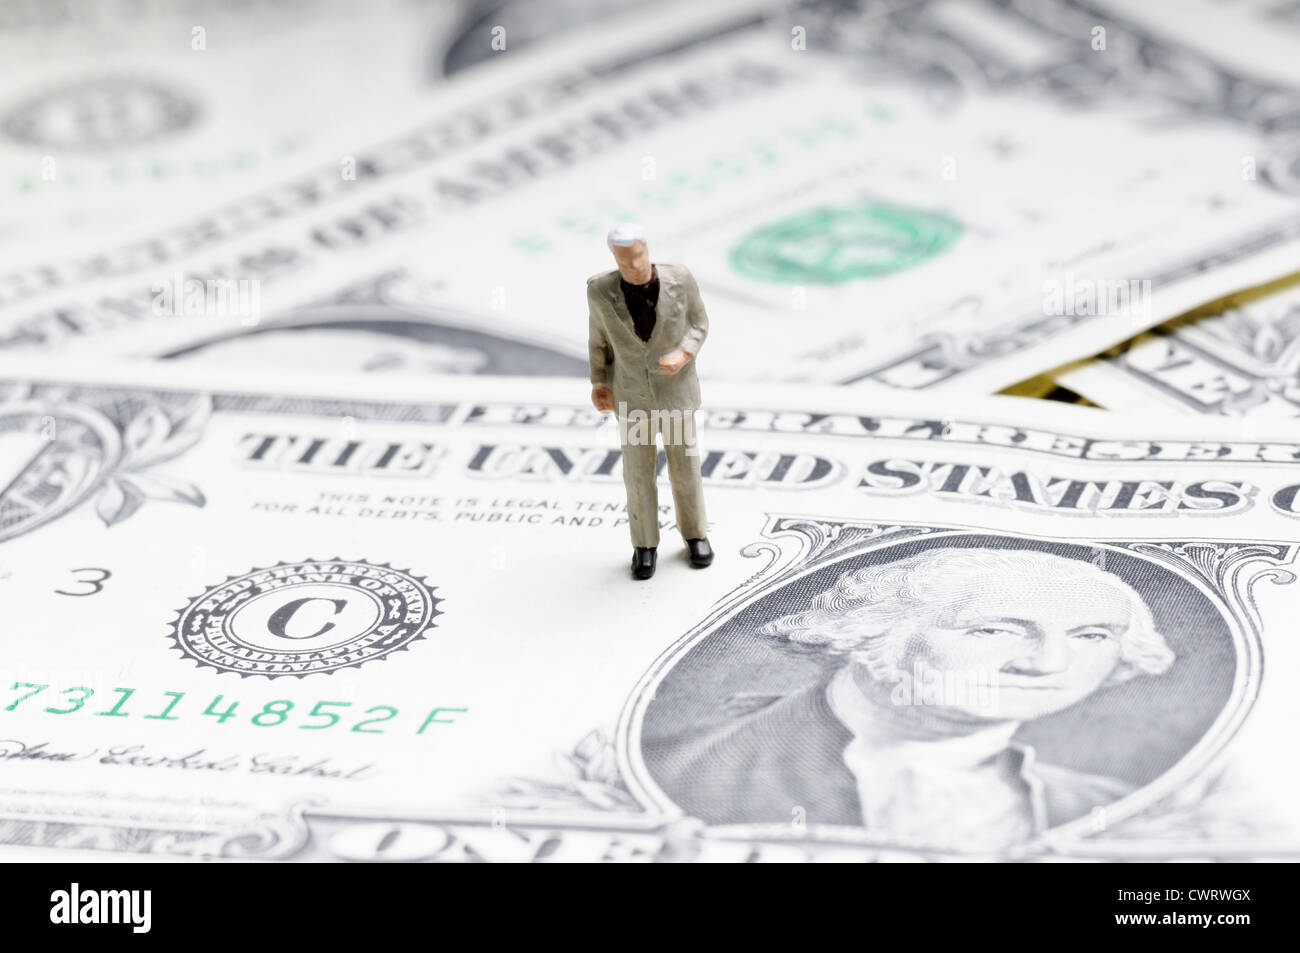 Diminuta figura del empresario de pie sobre un billete de dólar Foto de stock